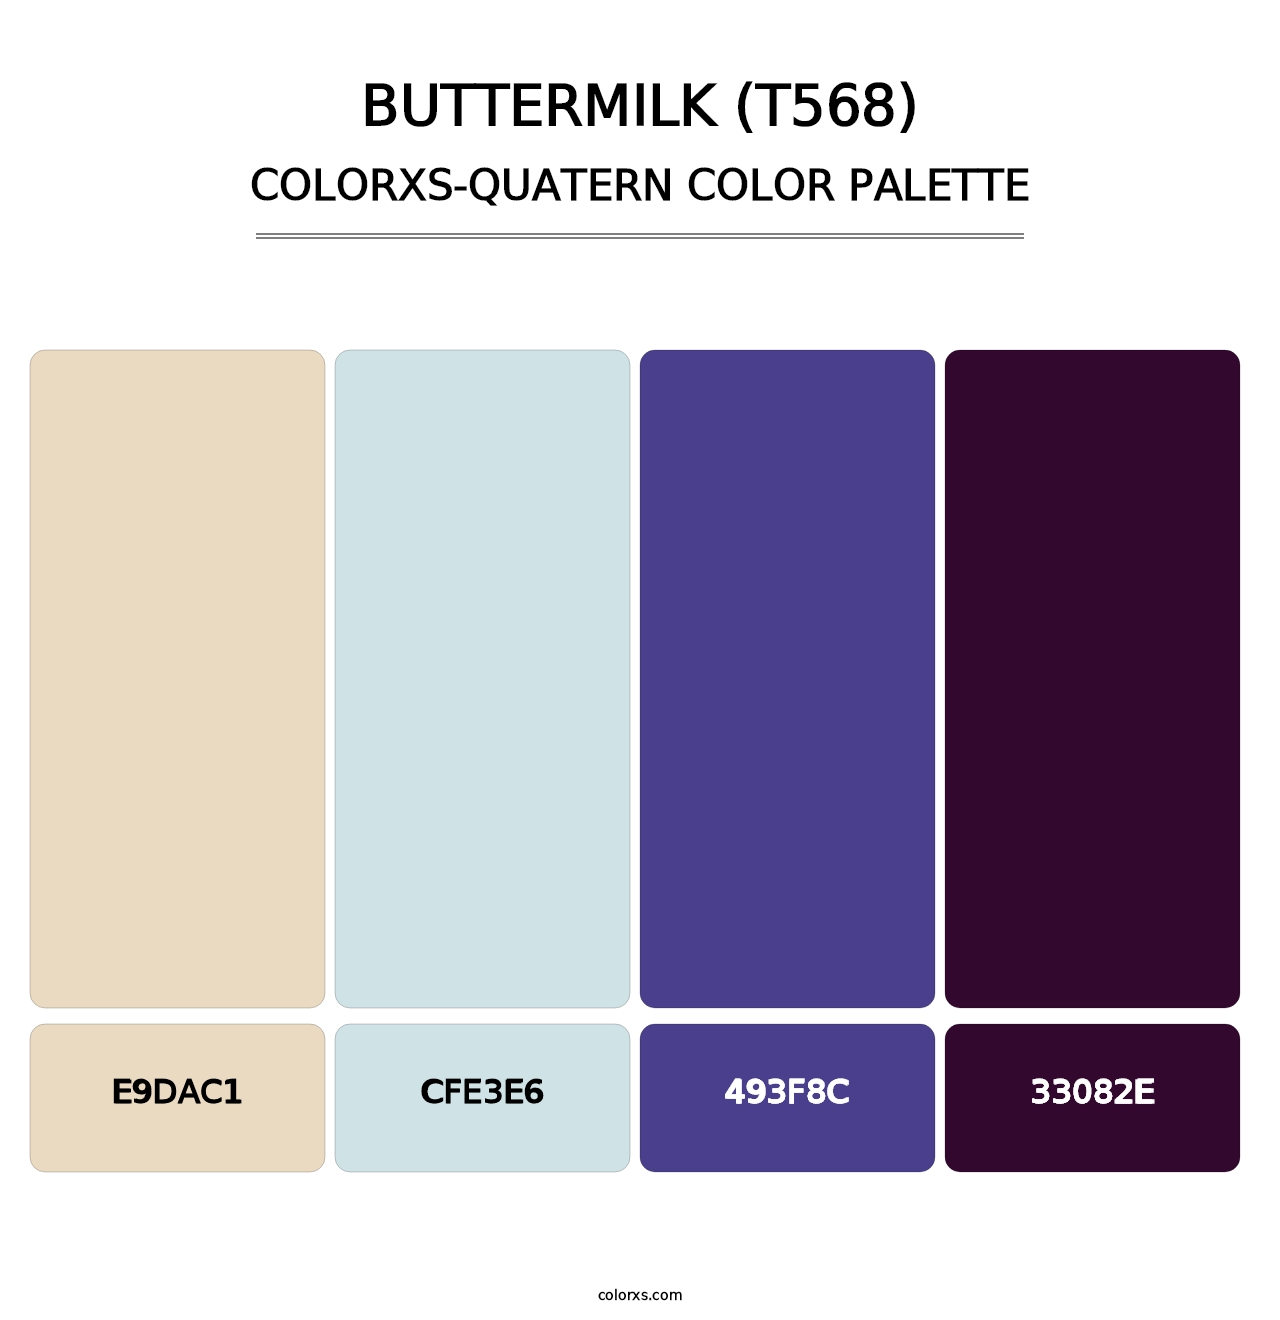 Buttermilk (T568) - Colorxs Quatern Palette